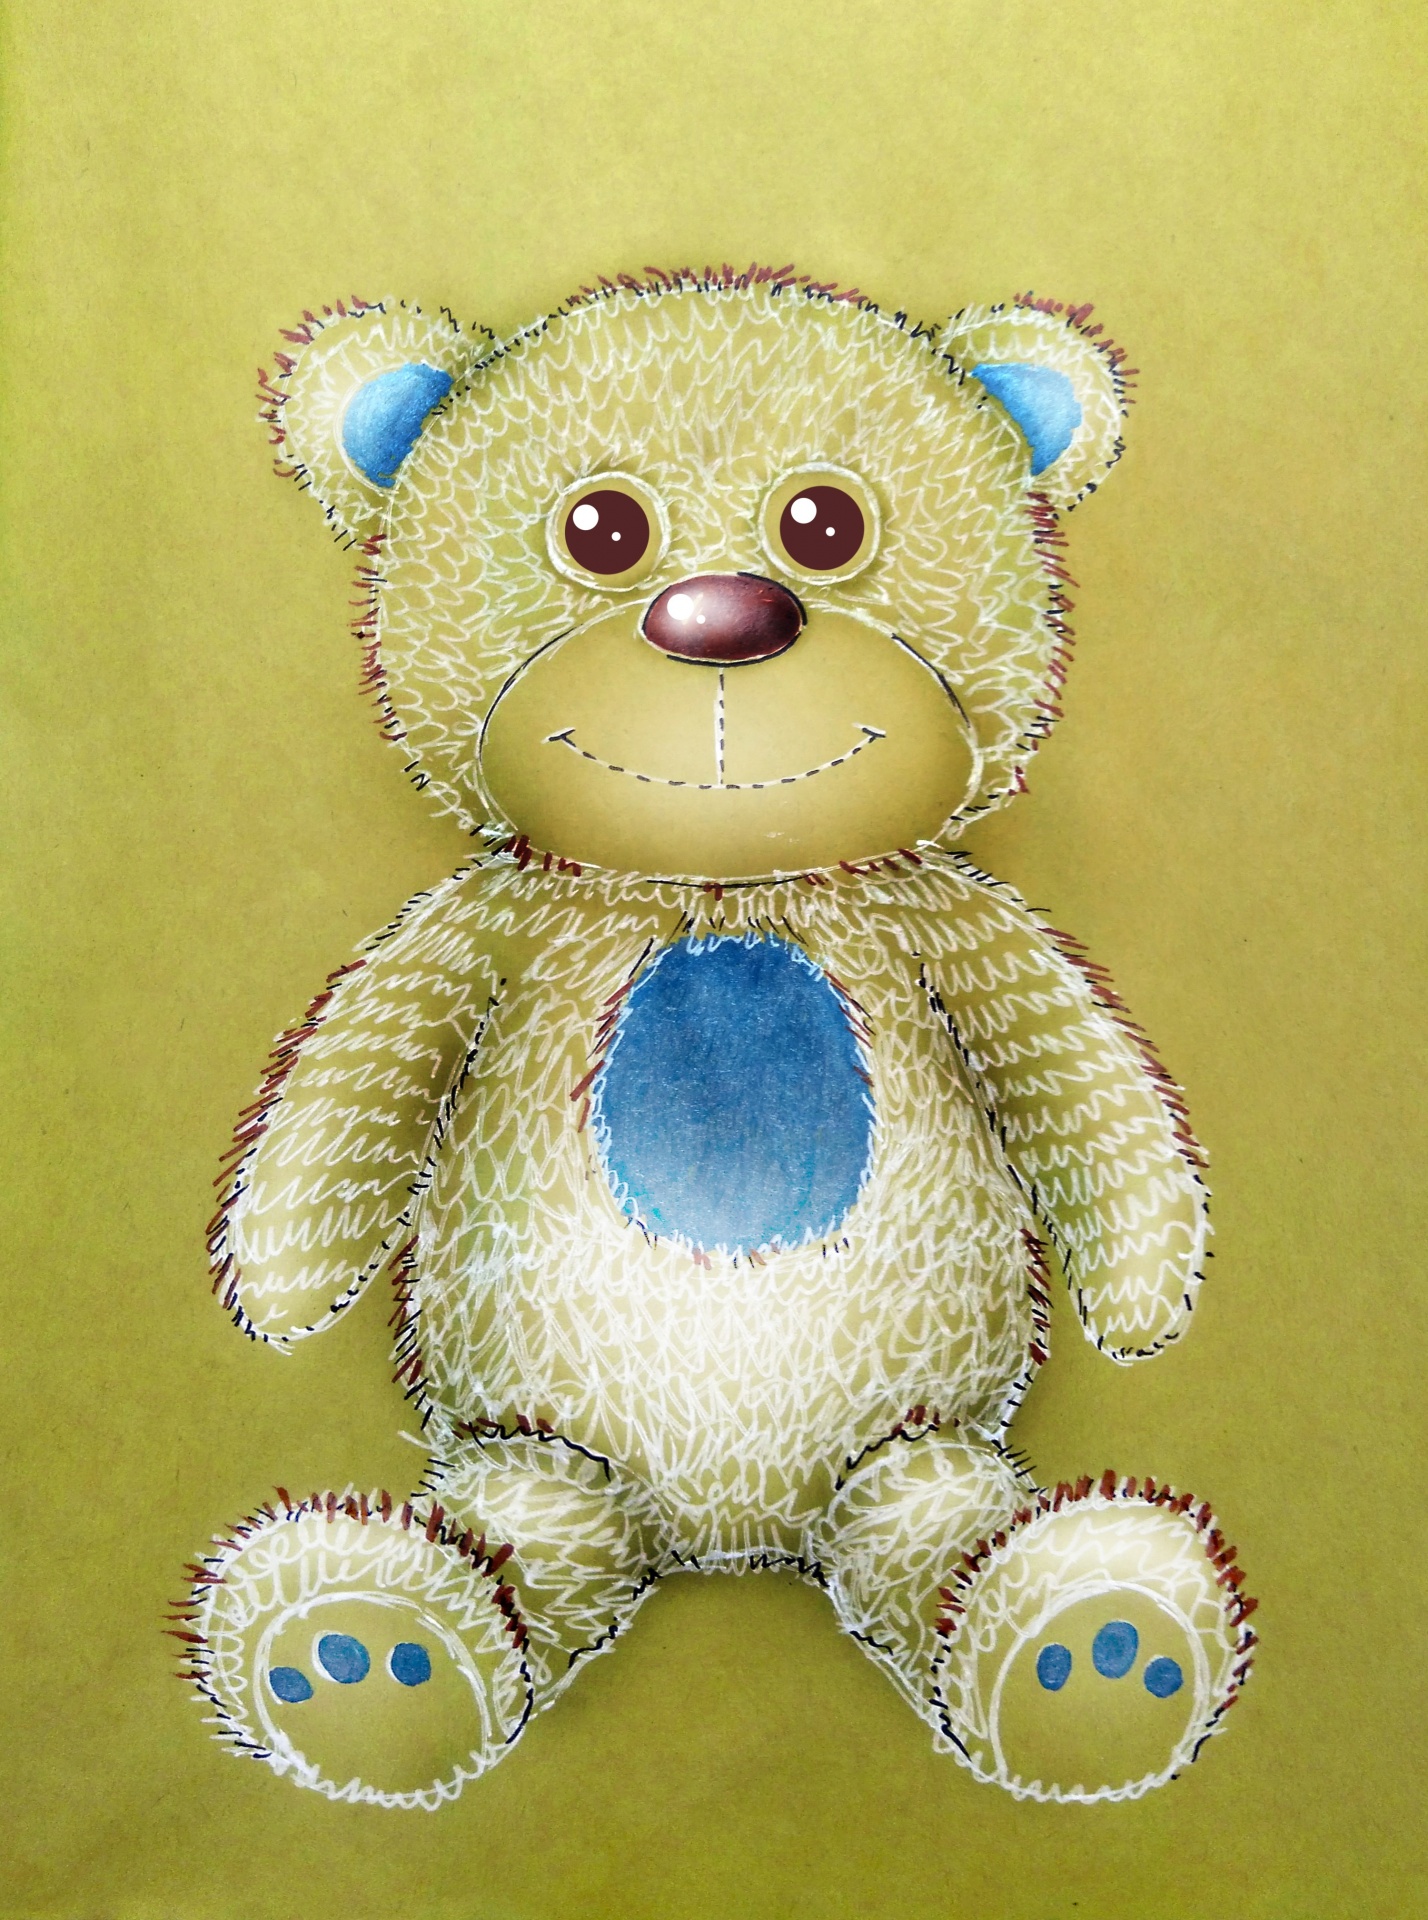 soft toy teddy bear